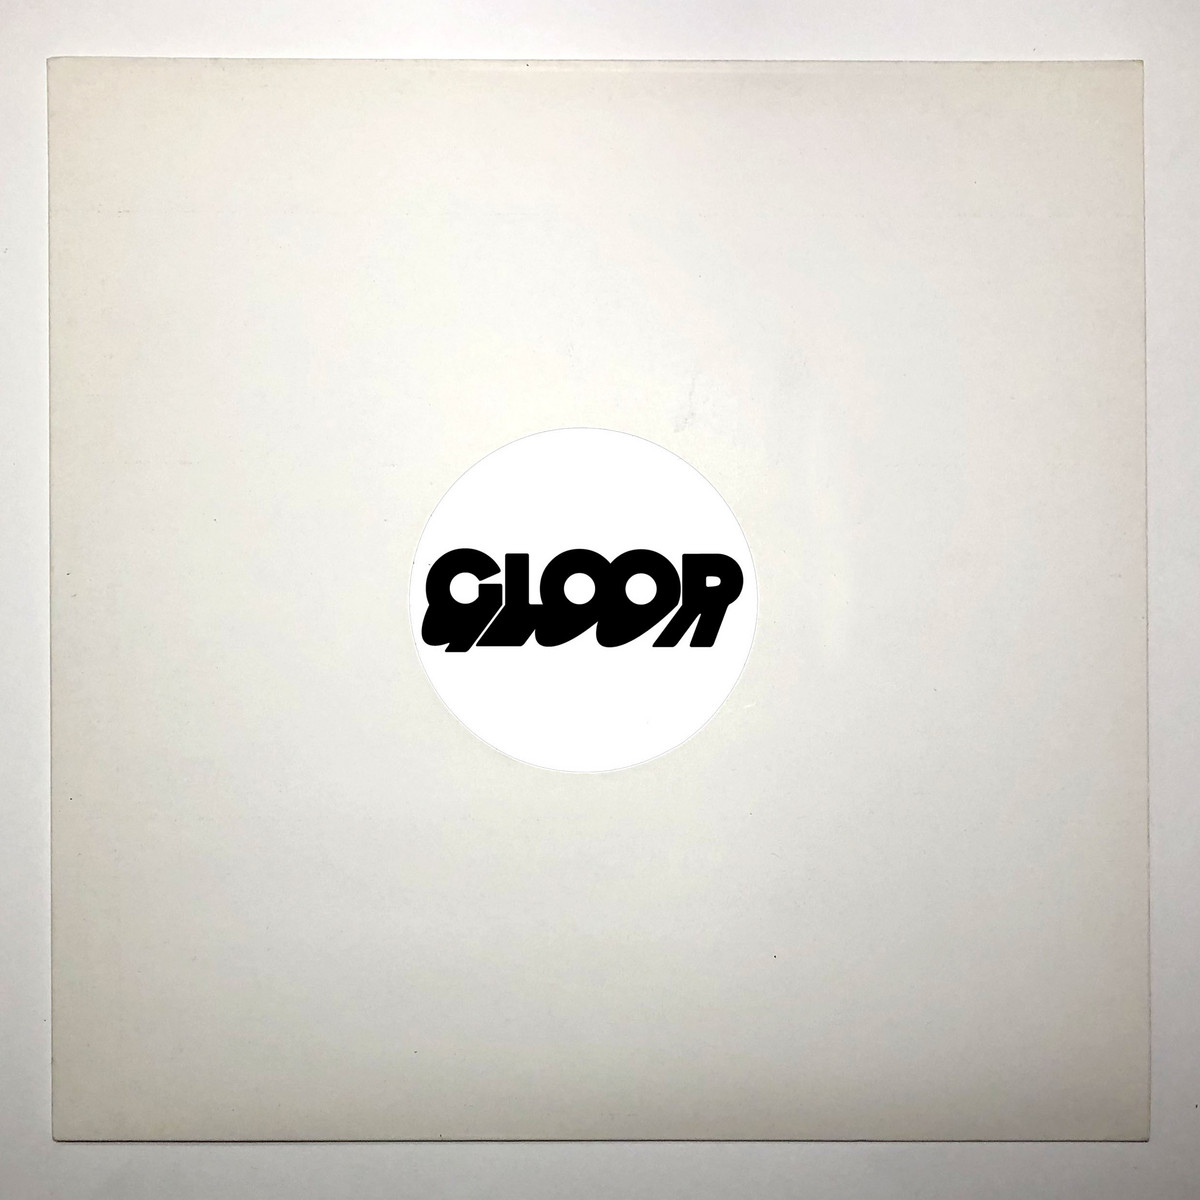 Gloor - Supermusicbargain - CRE053 - CODEK